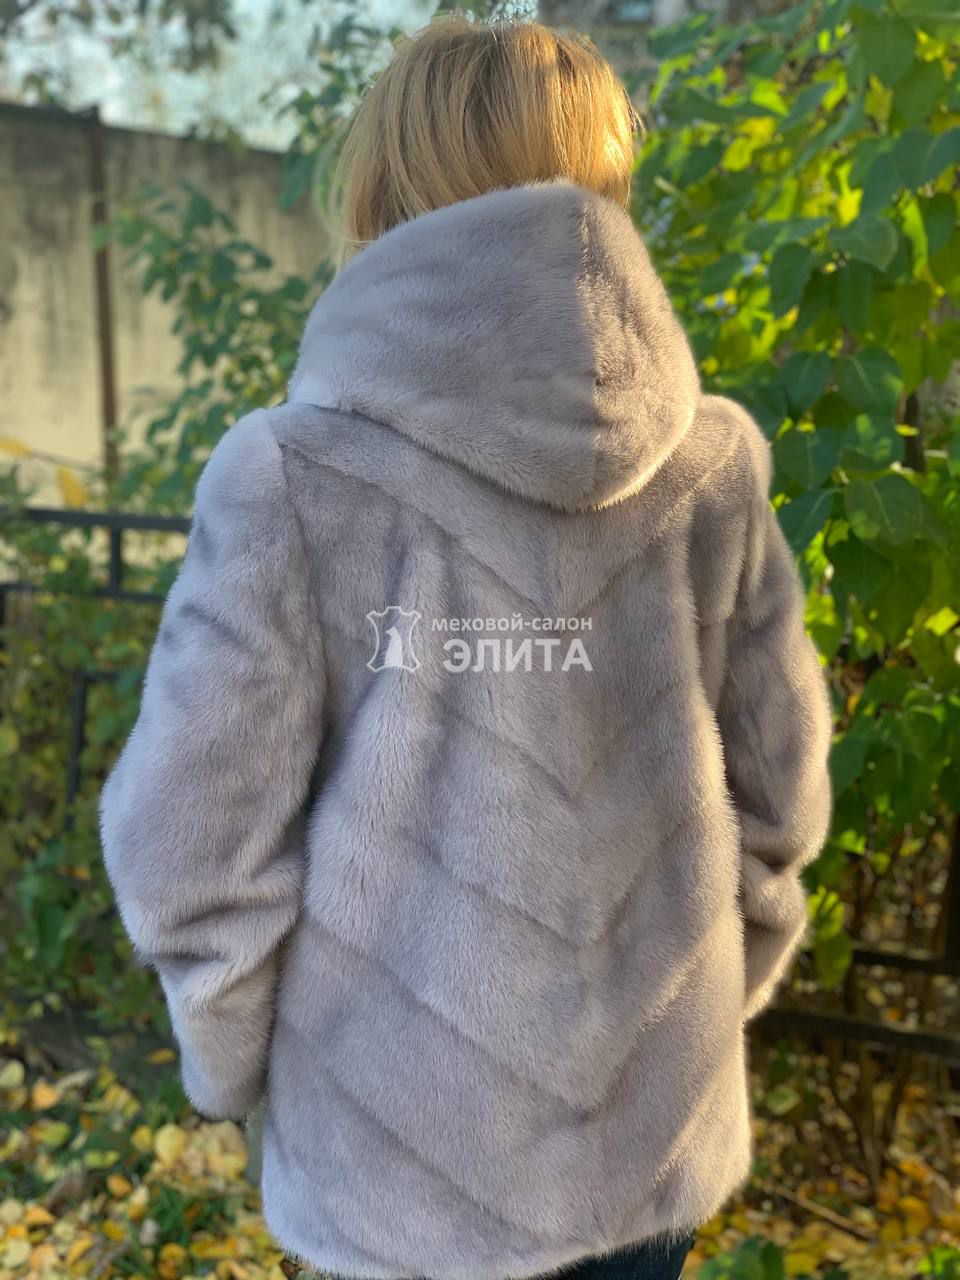 Норковая куртка м. S-2518 р-р 46-54, цена 110500 рублей в интернет-магазине кожи и меха ЭЛИТА. Вид 2